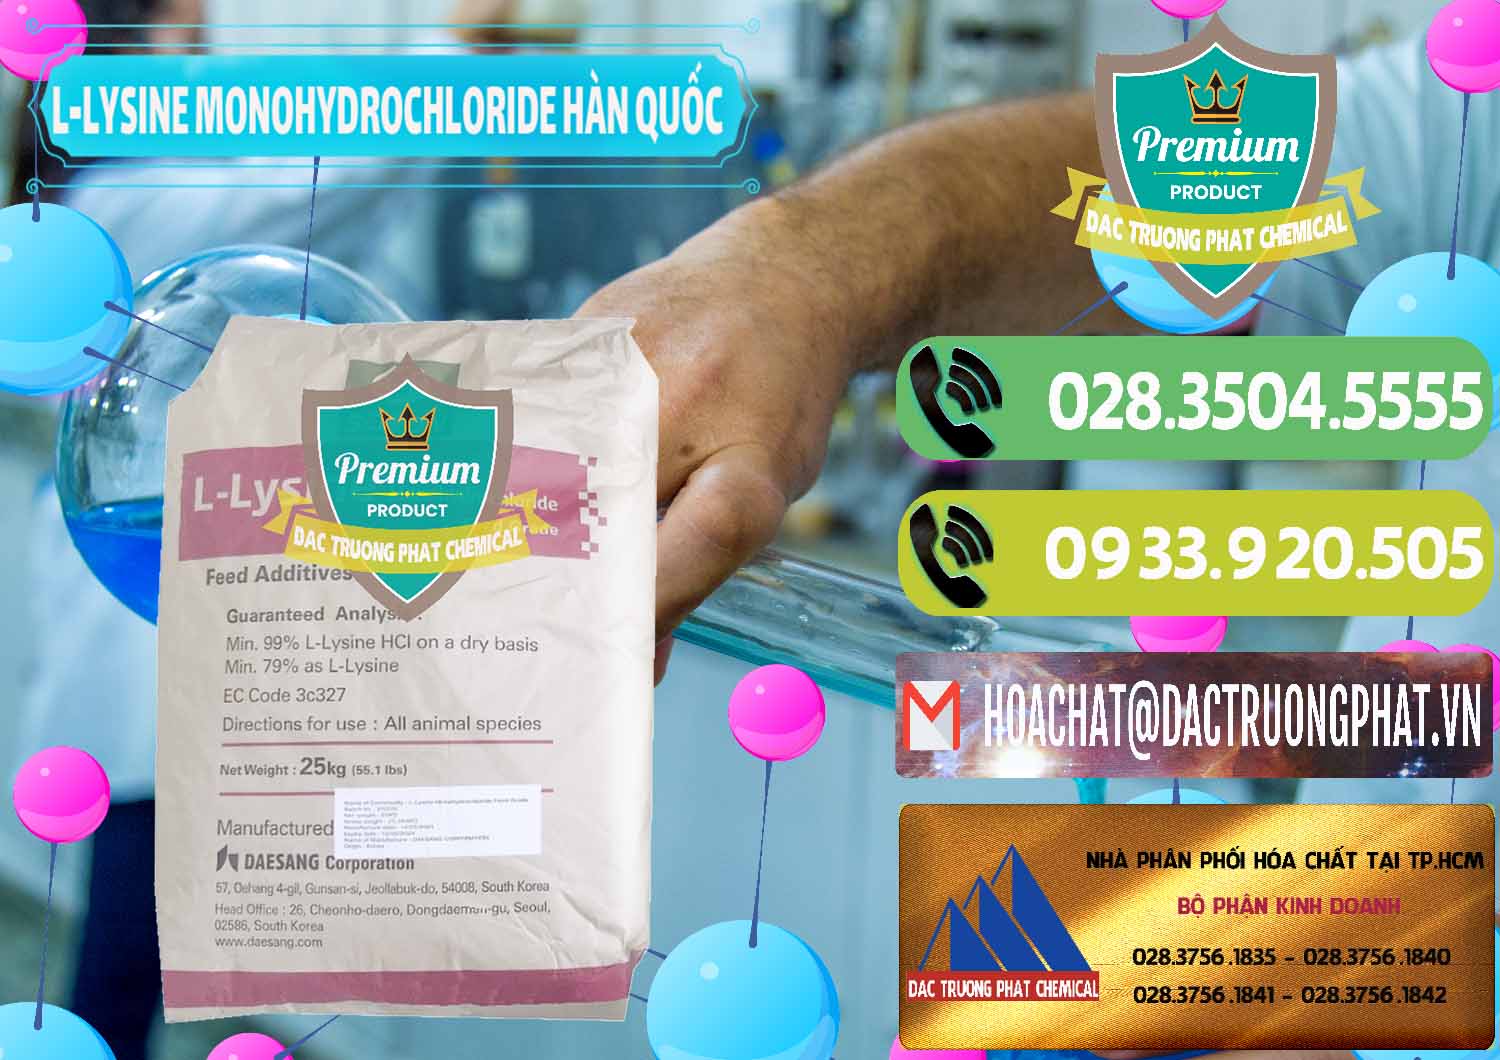 Cty chuyên cung ứng _ bán L-Lysine Monohydrochloride Feed Grade Sewon Hàn Quốc Korea - 0302 - Nơi chuyên cung ứng ( phân phối ) hóa chất tại TP.HCM - hoachatmientay.vn